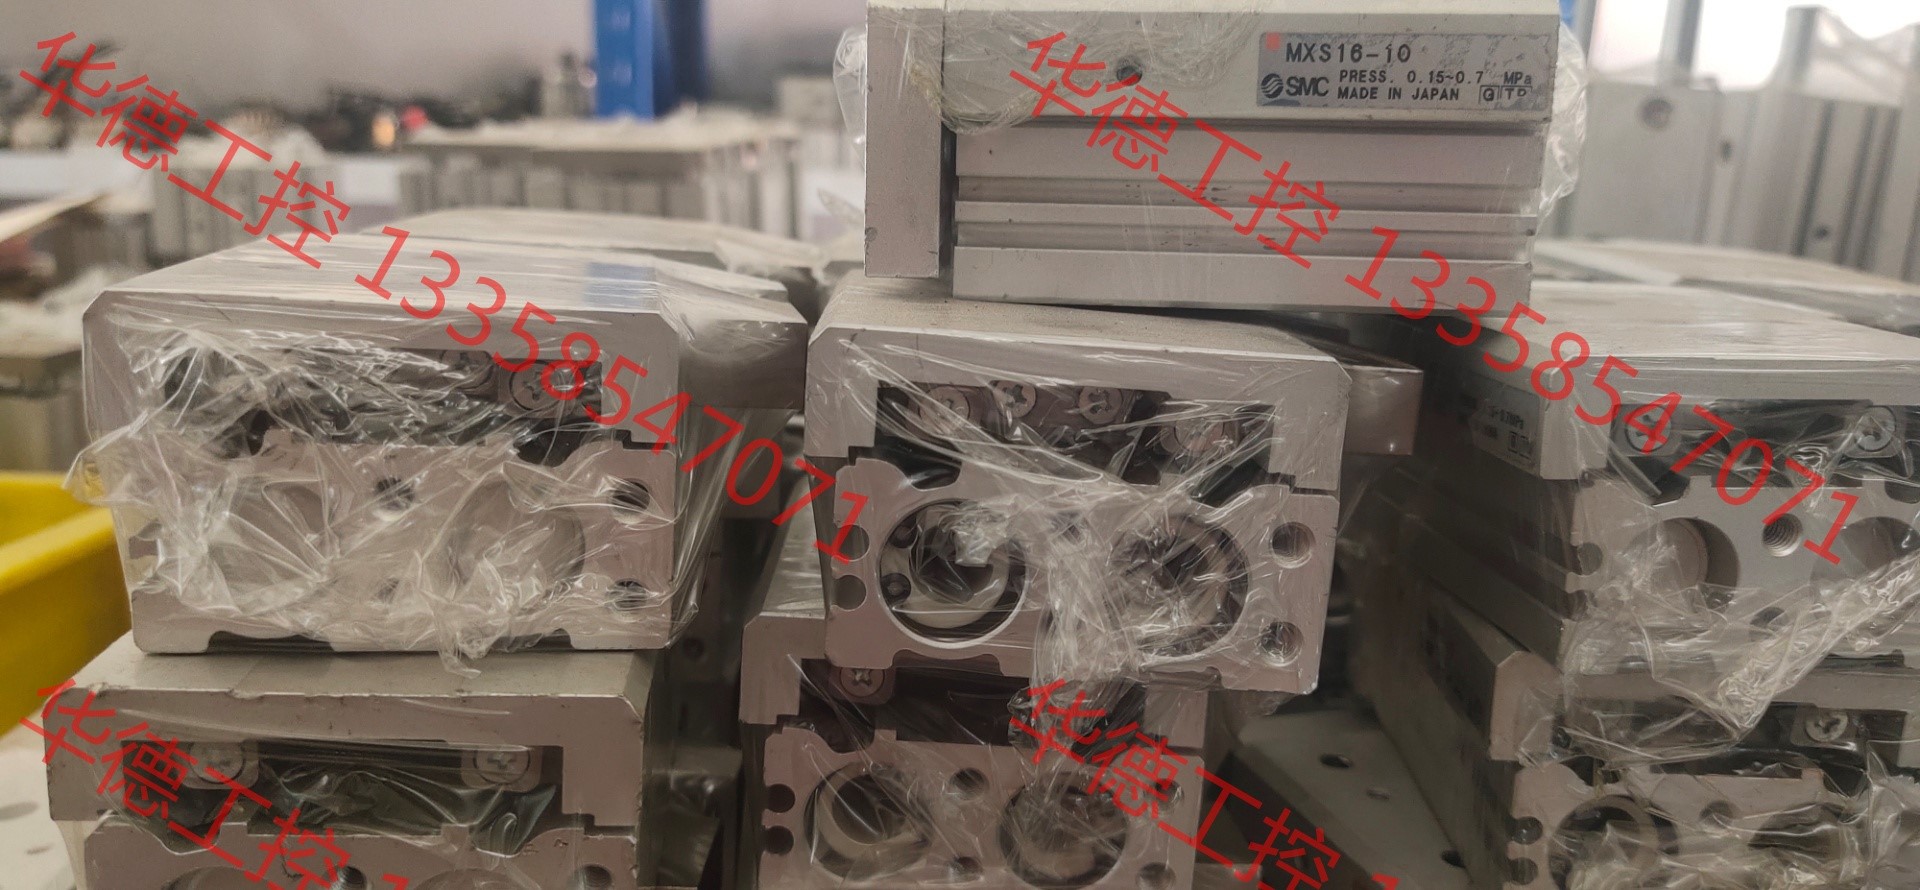 议价 日本拆件气拖板SMC16－10，数量三十多个，有意购者请下单 电子元器件市场 其它元器件 原图主图